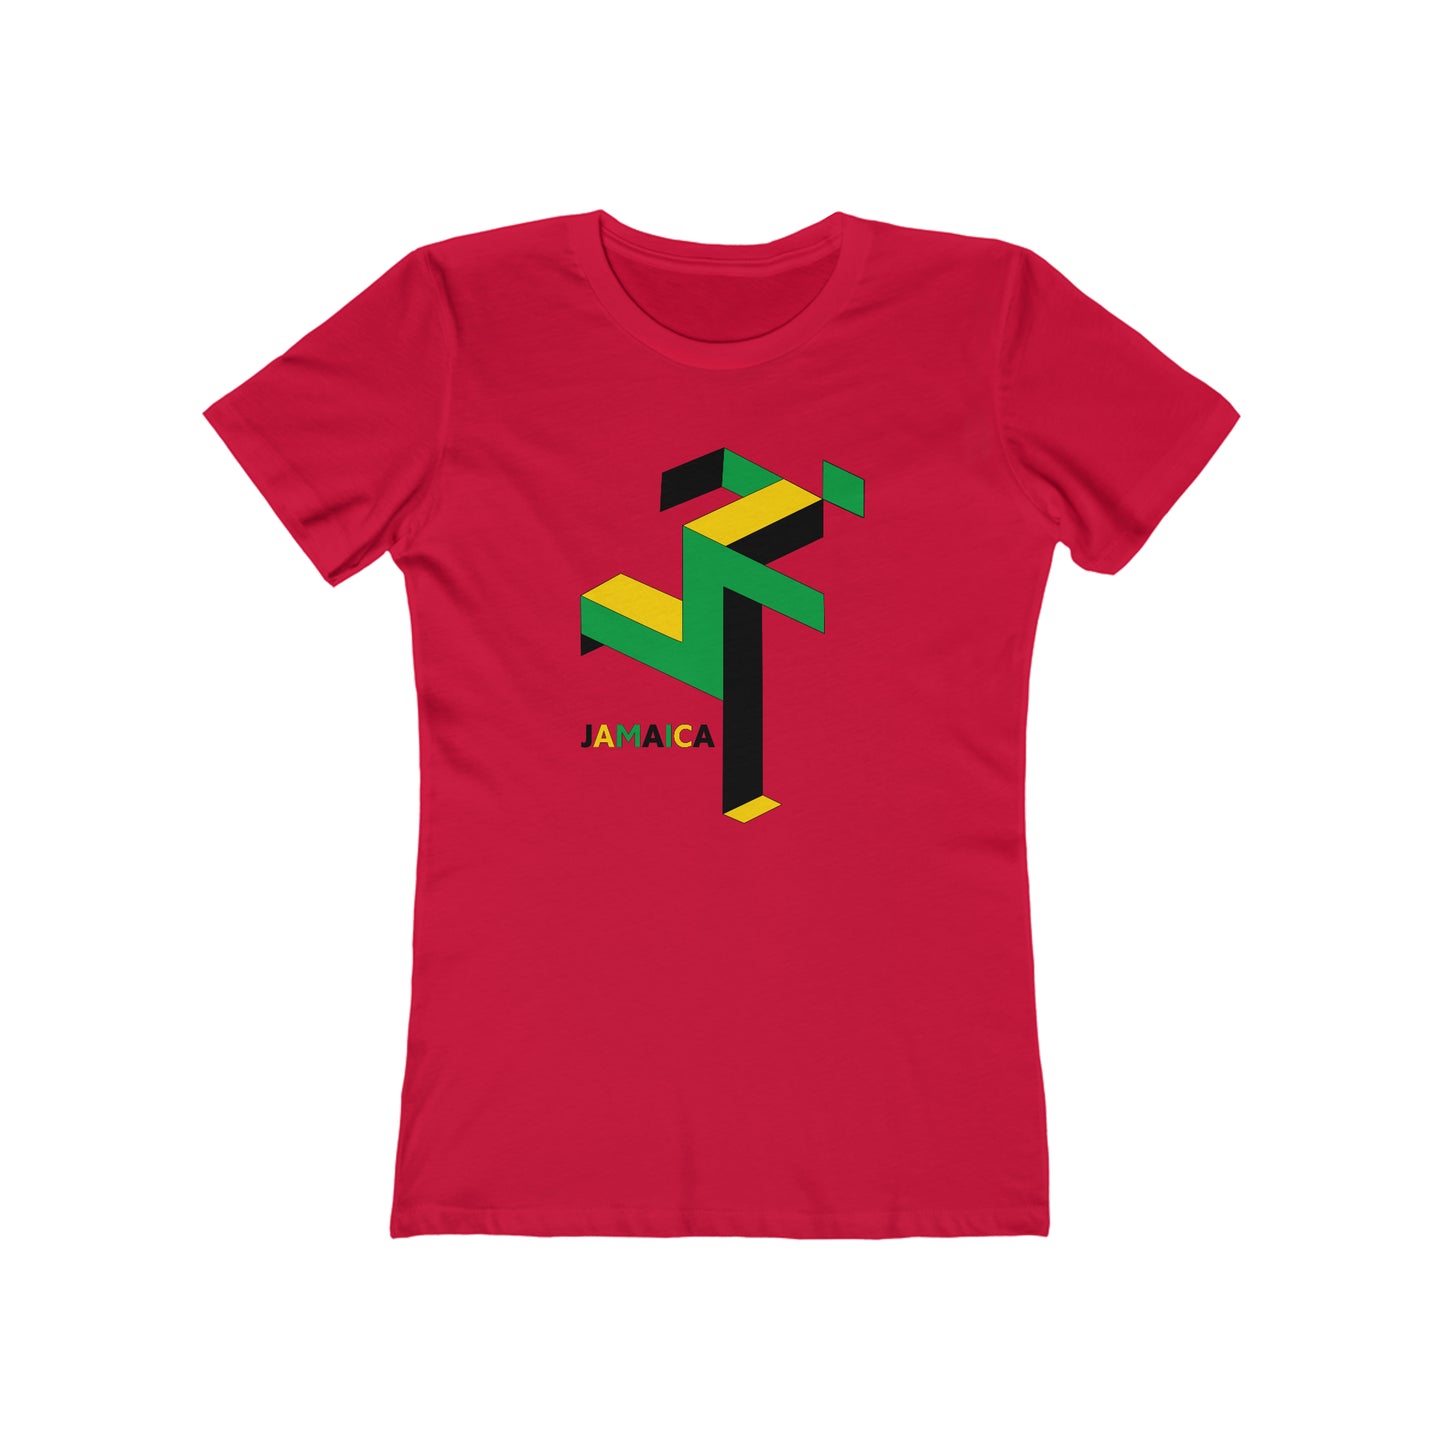 Jamaican Runner - Women's T-Shirt